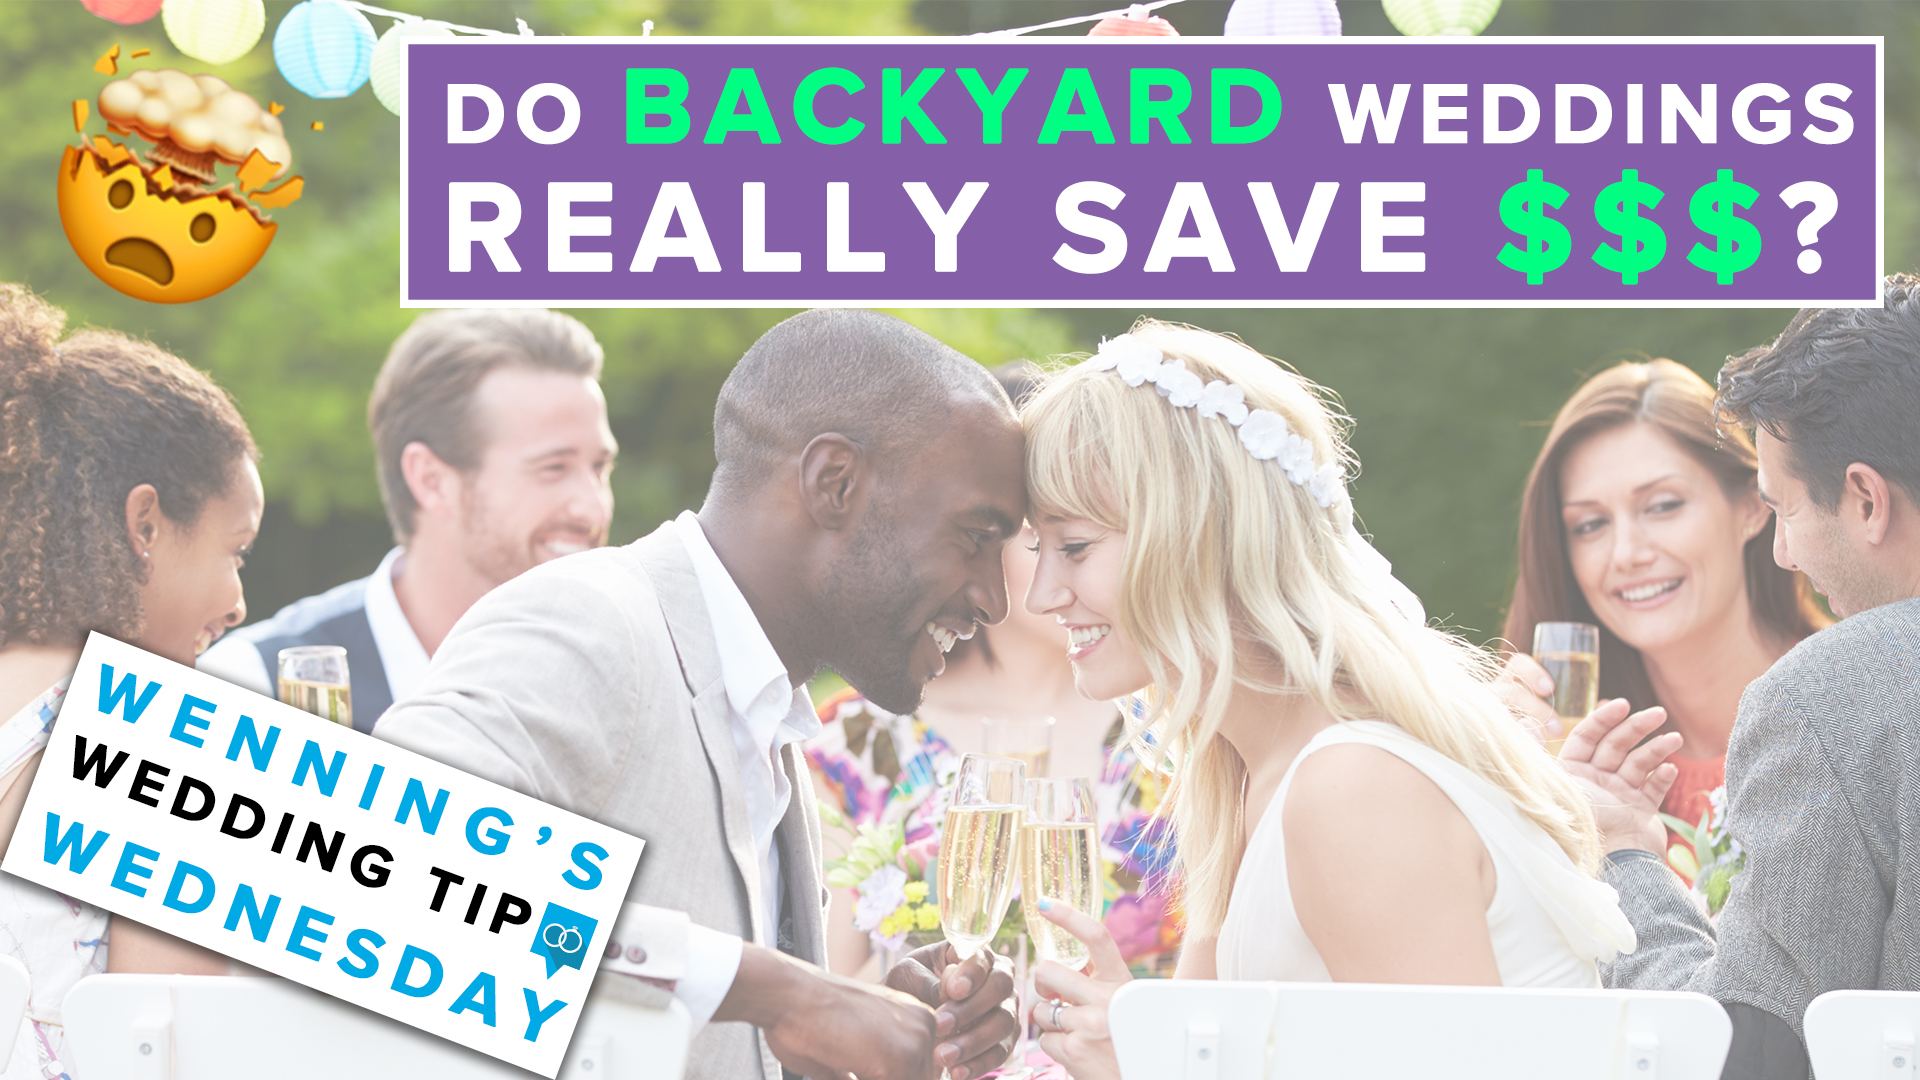 Do Backyard Weddings Really Save $$$?